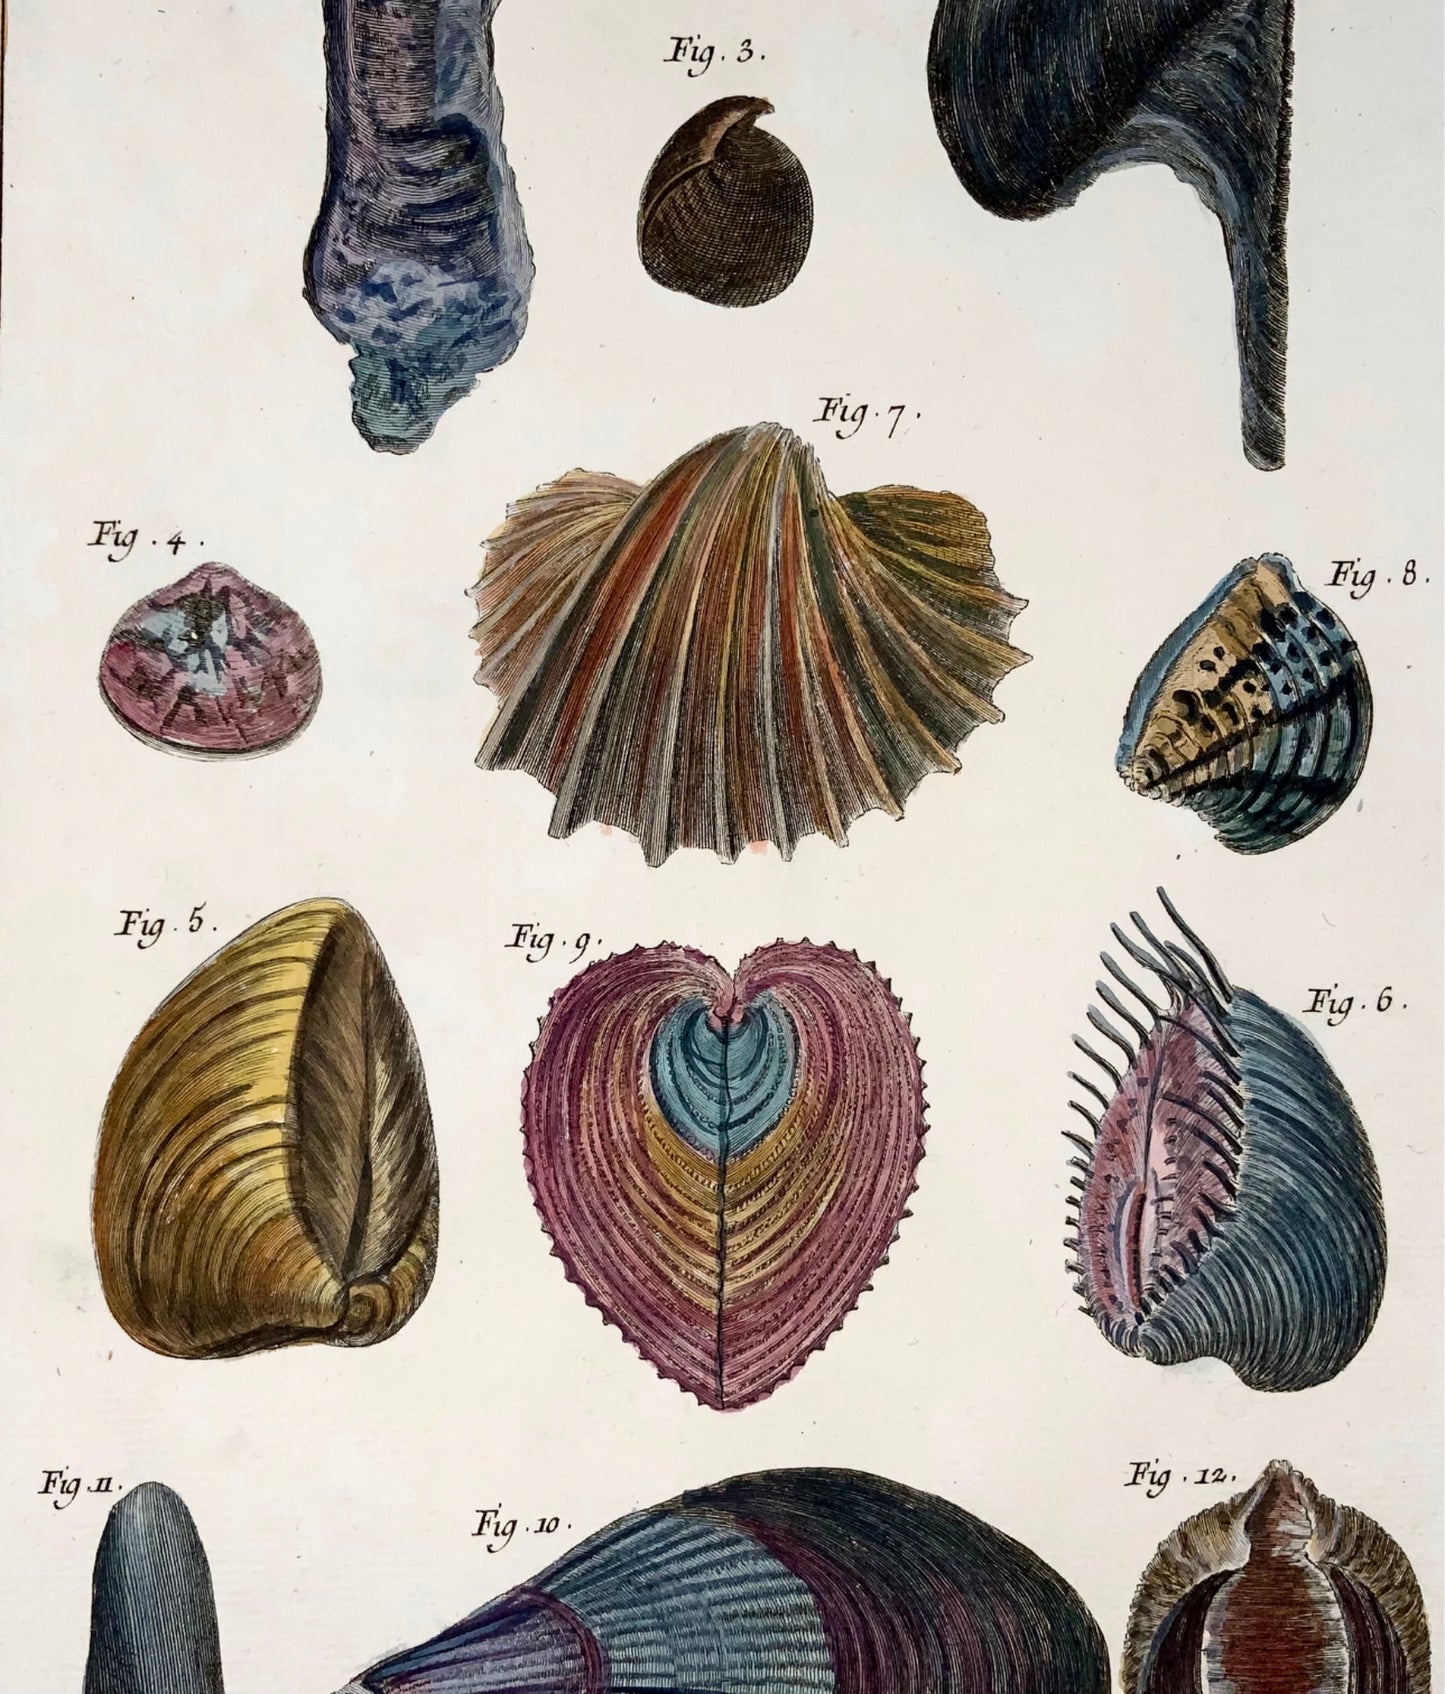 1751 Martinet, Coquilles de Mer, Conchiglie, vita marina, colorato a mano, 39 cm